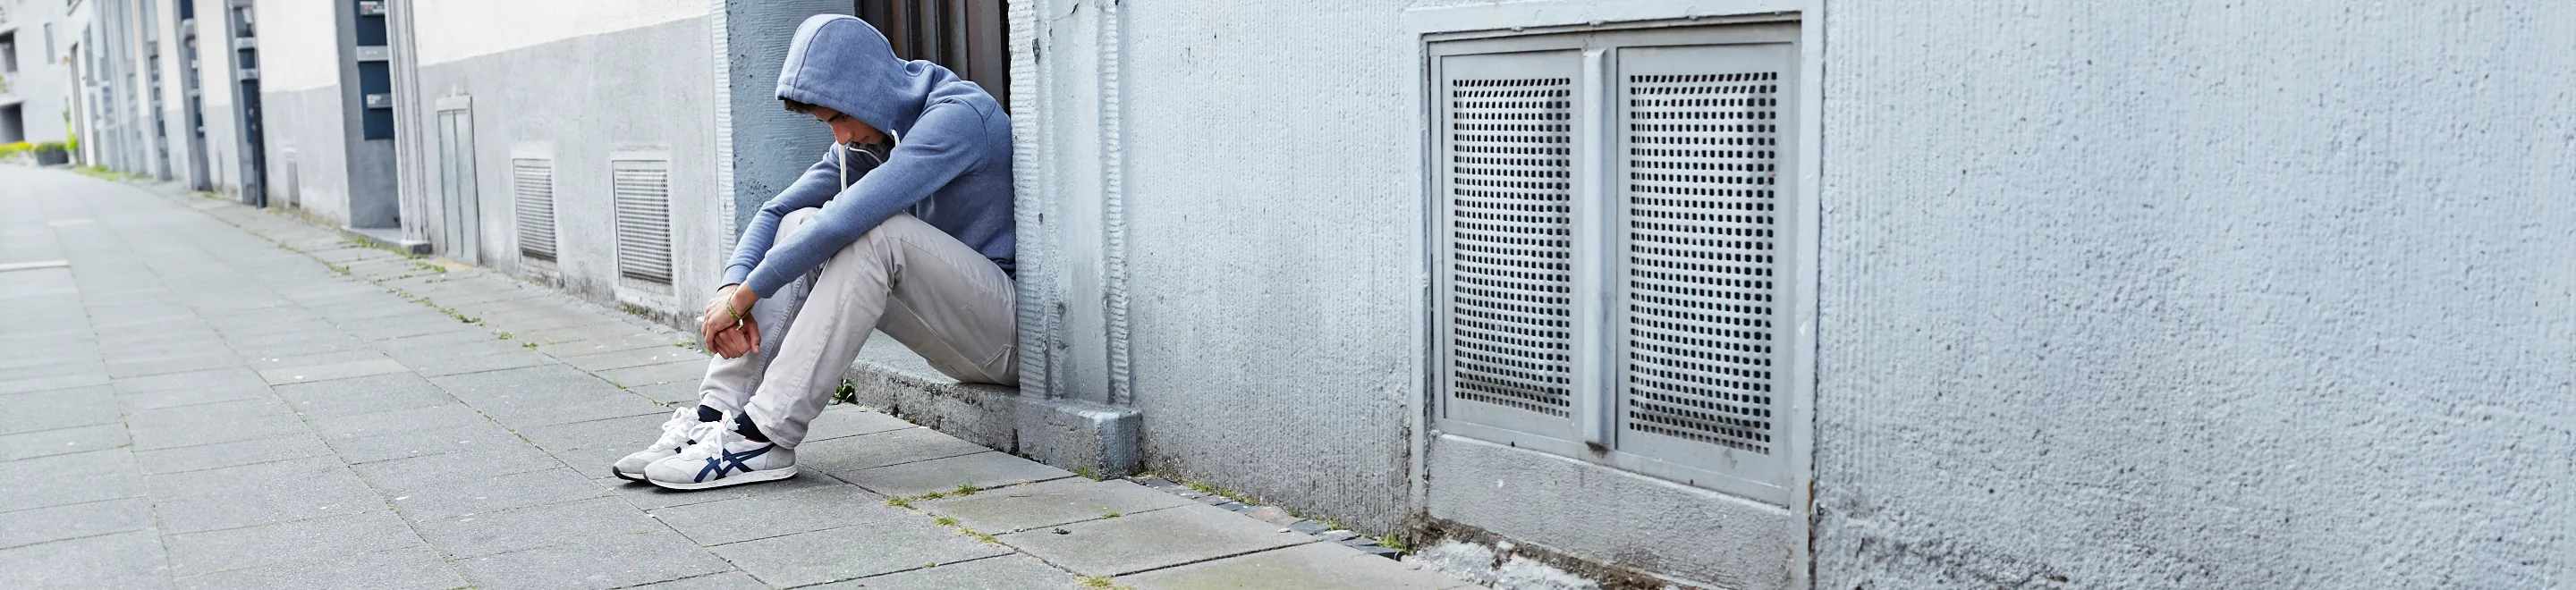 Ein Jugendlicher mit Kapuzenpulli sitzt traurig am Straßenrand